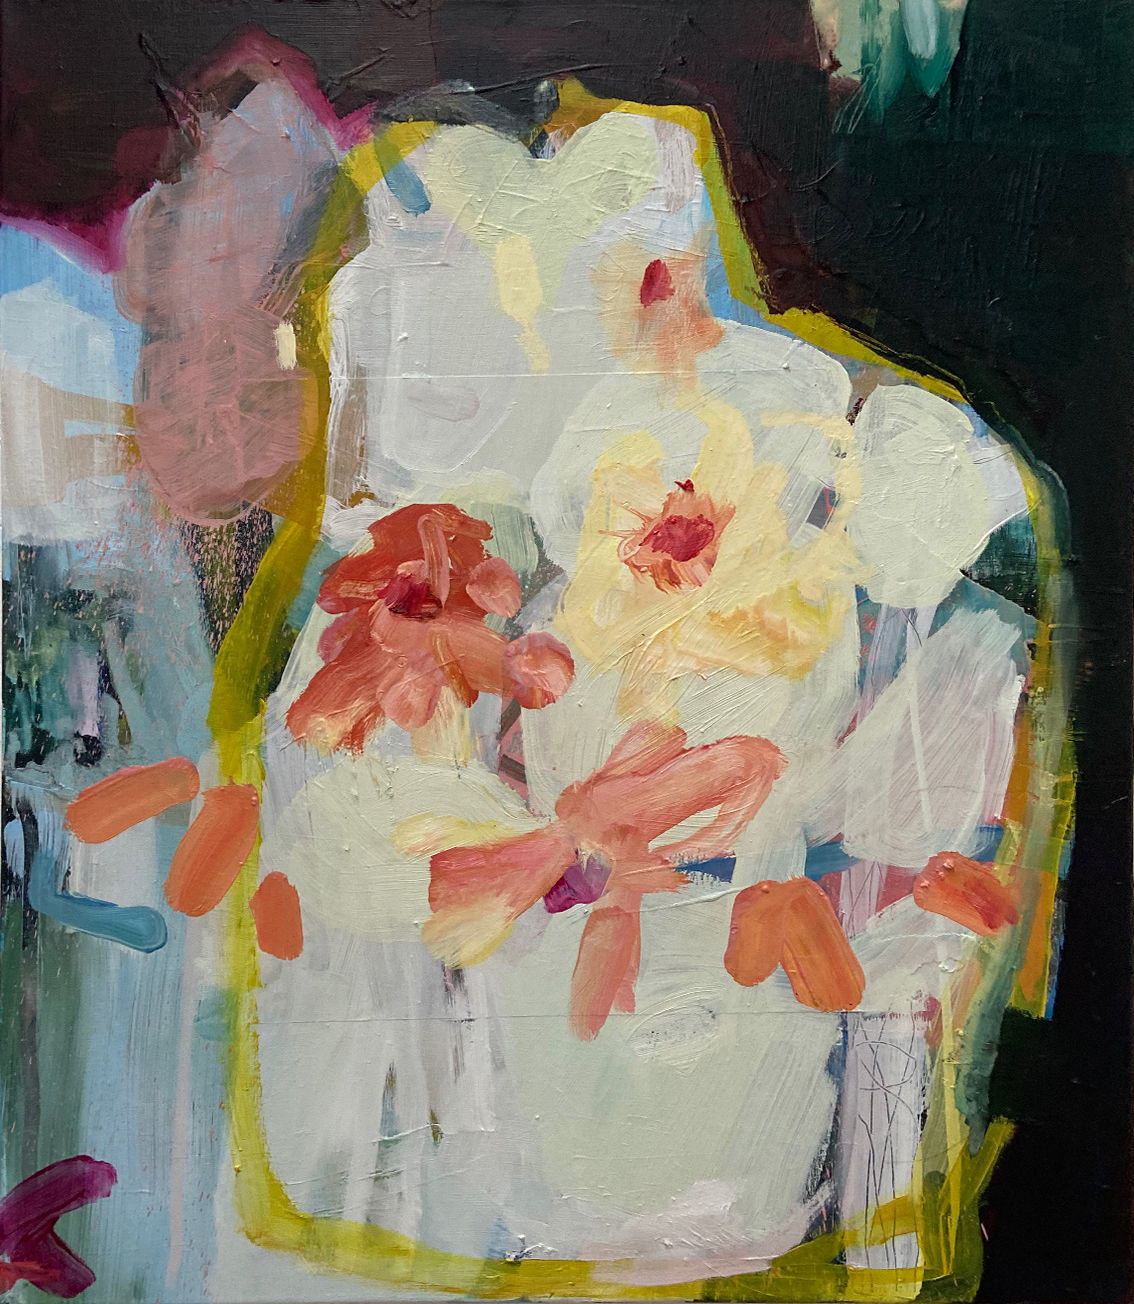 Janine Vandebosch, Summertime 2, oil on paper, 2022,69 x 60 cm